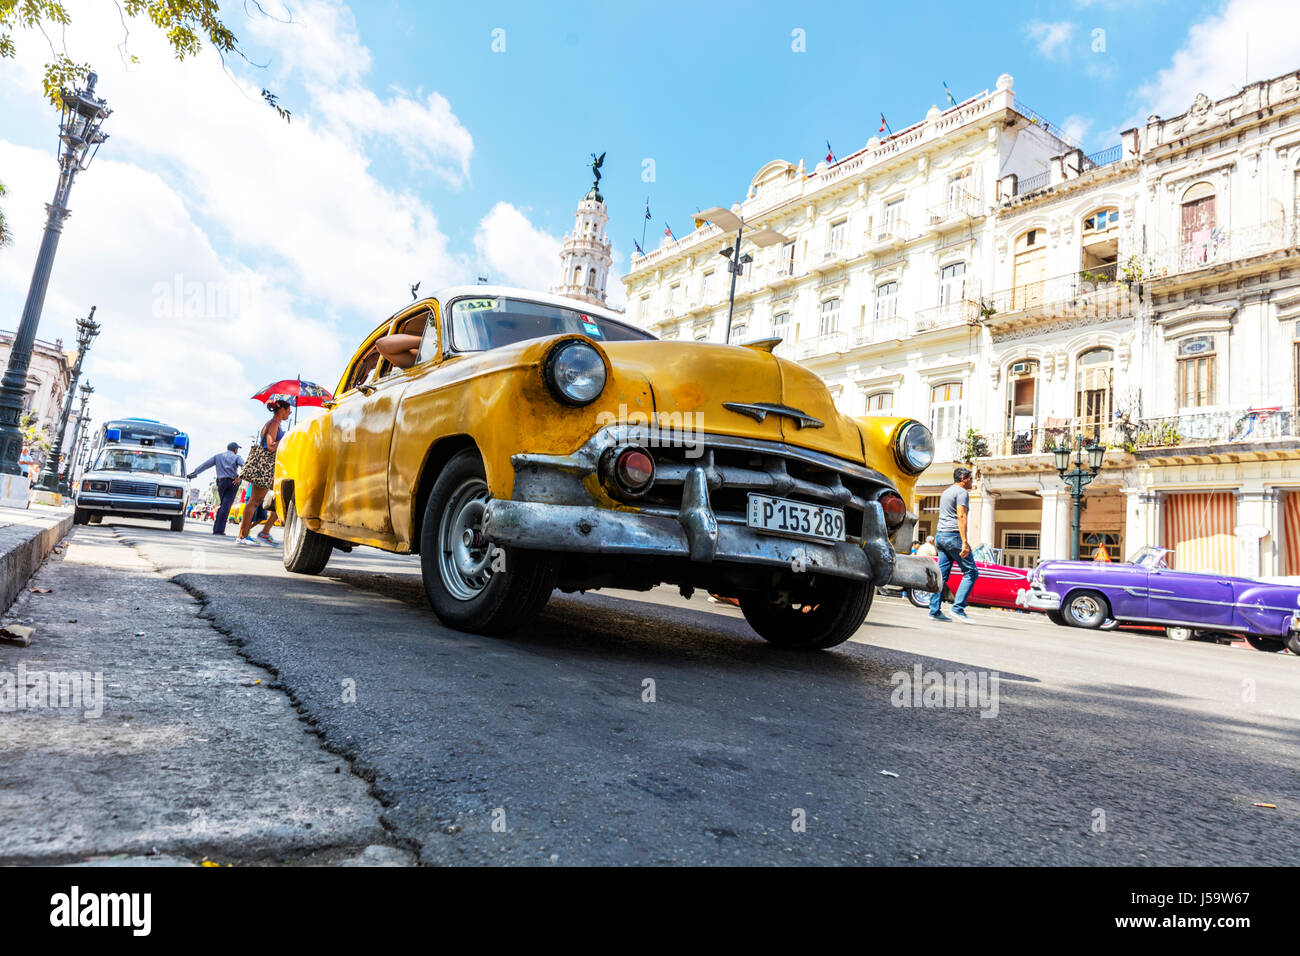 L'Avana Cuba classico cubano auto taxi cubano American Classic Car Parque Central Havana La Habana Cuba automobili cubano Foto Stock